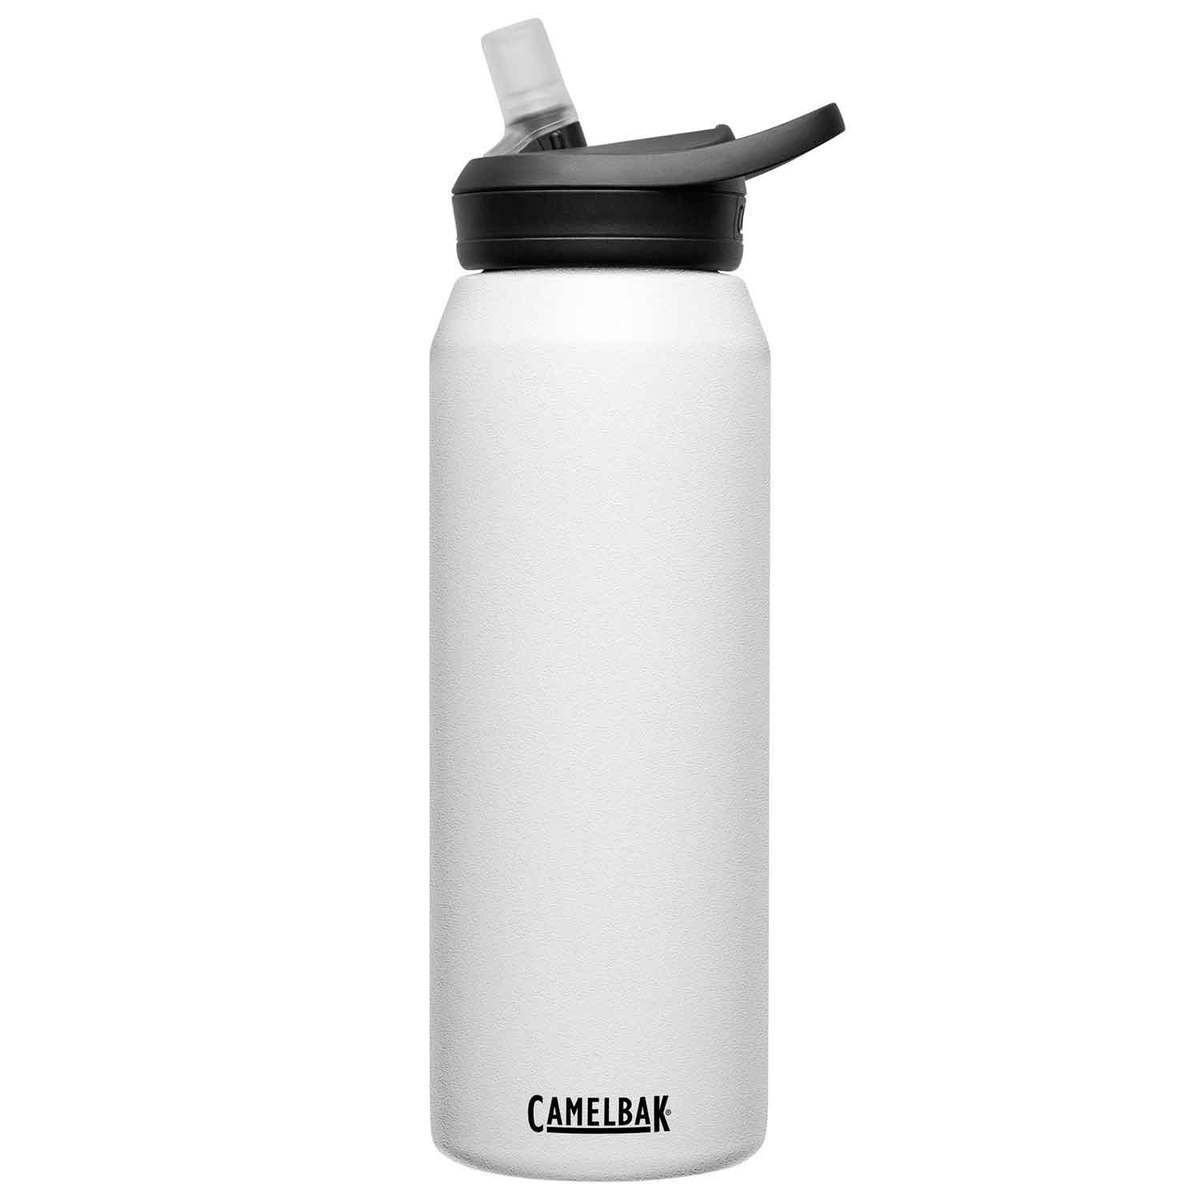 https://www.sportsmans.com/medias/camelbak-eddy-32oz-insulated-bottle-with-straw-lid-white-1648171-1.jpg?context=bWFzdGVyfGltYWdlc3wzNTY1NXxpbWFnZS9qcGVnfGltYWdlcy9oYmEvaDdlLzkzNTE3Njk3MTg4MTQuanBnfGQxYmQ3ZWE1NzBkYzEyYjczZjZlNzlmMDdjYmZiYzE0NmZkYTU1YWZhNjgwZjczZDIyMDE0MDcwNTY5YzA1ZTY